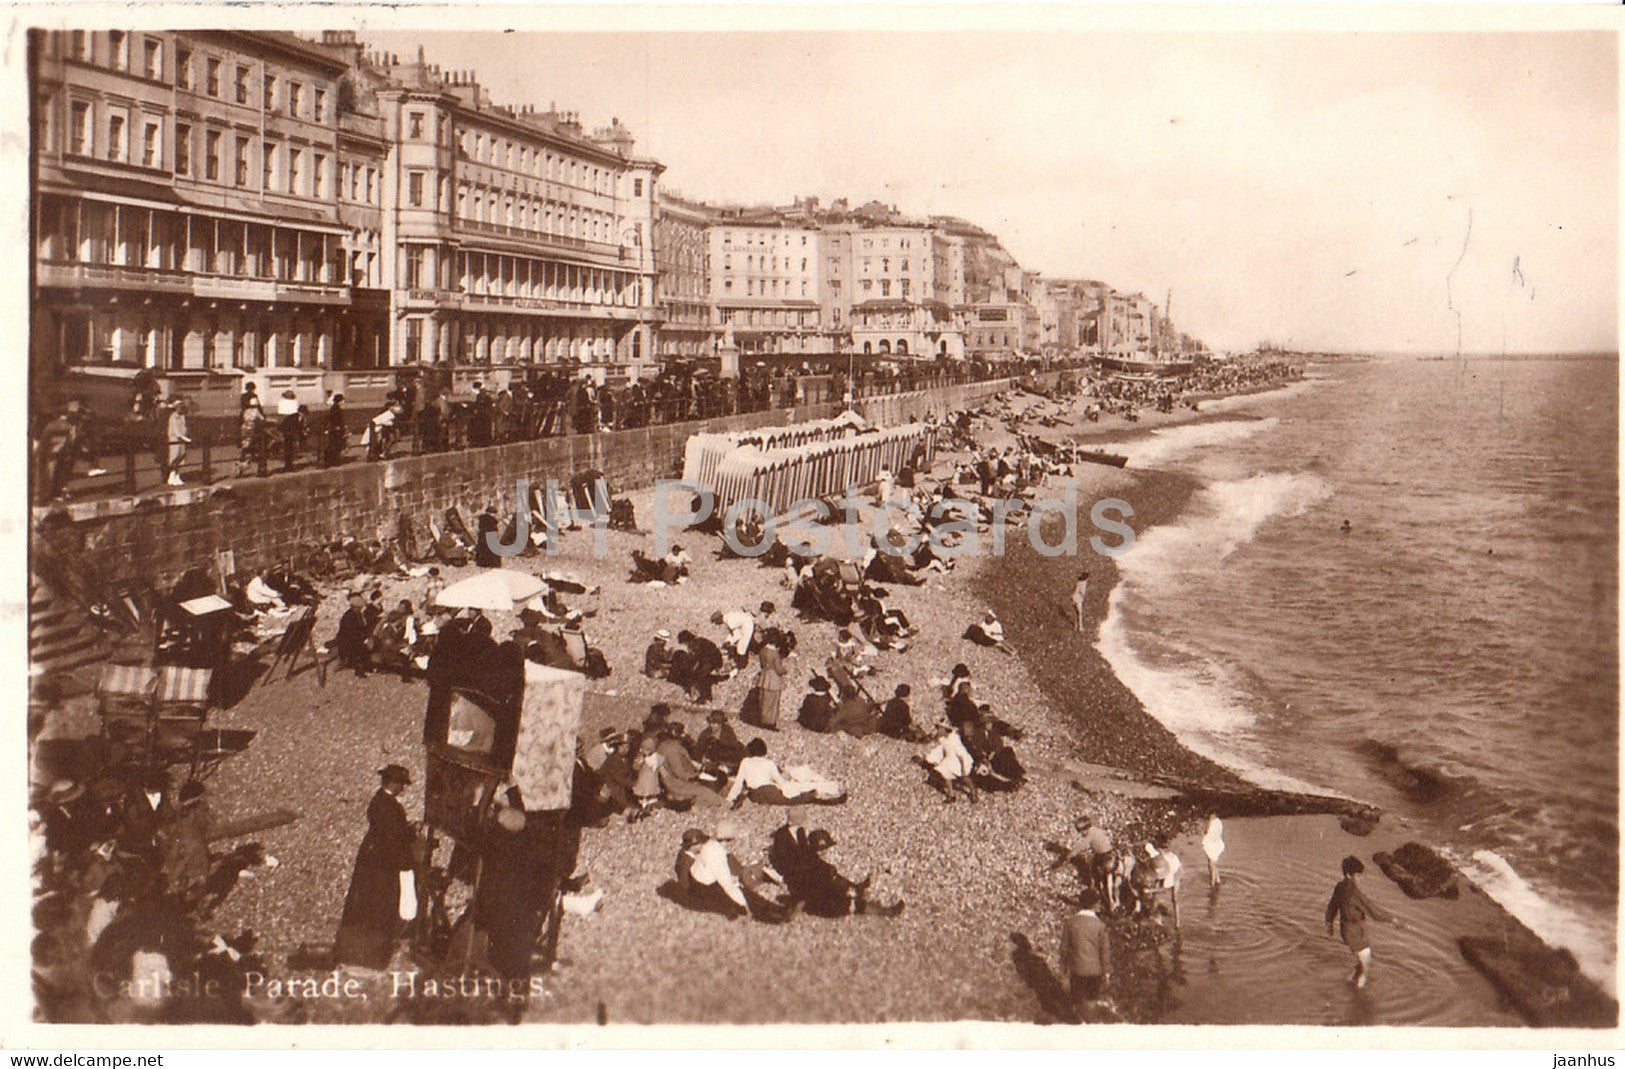 Hastings - Carlisle Parade - old postcard - England - 1925 - United Kingdom - used - JH Postcards